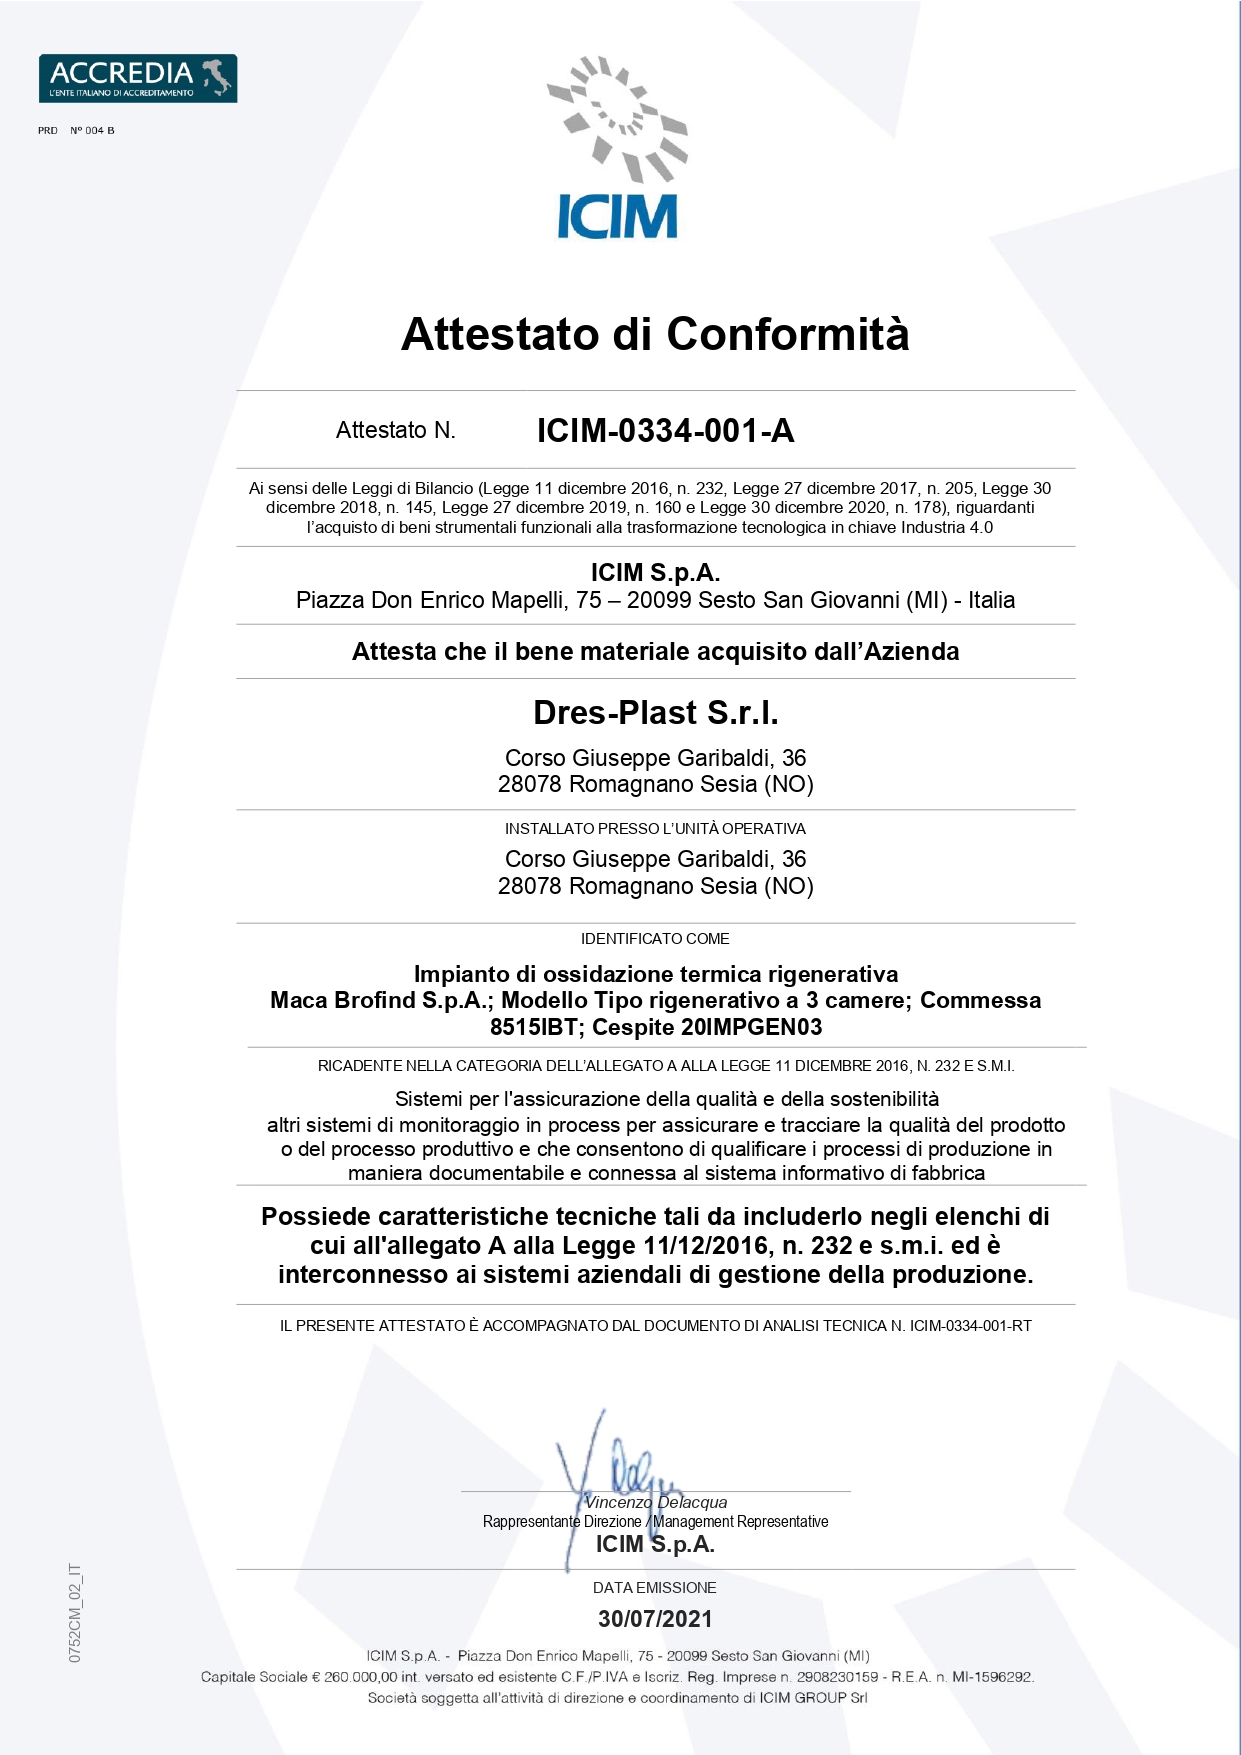 Certificazione ICIM 0344 001 ottenuta da Dres-Plast